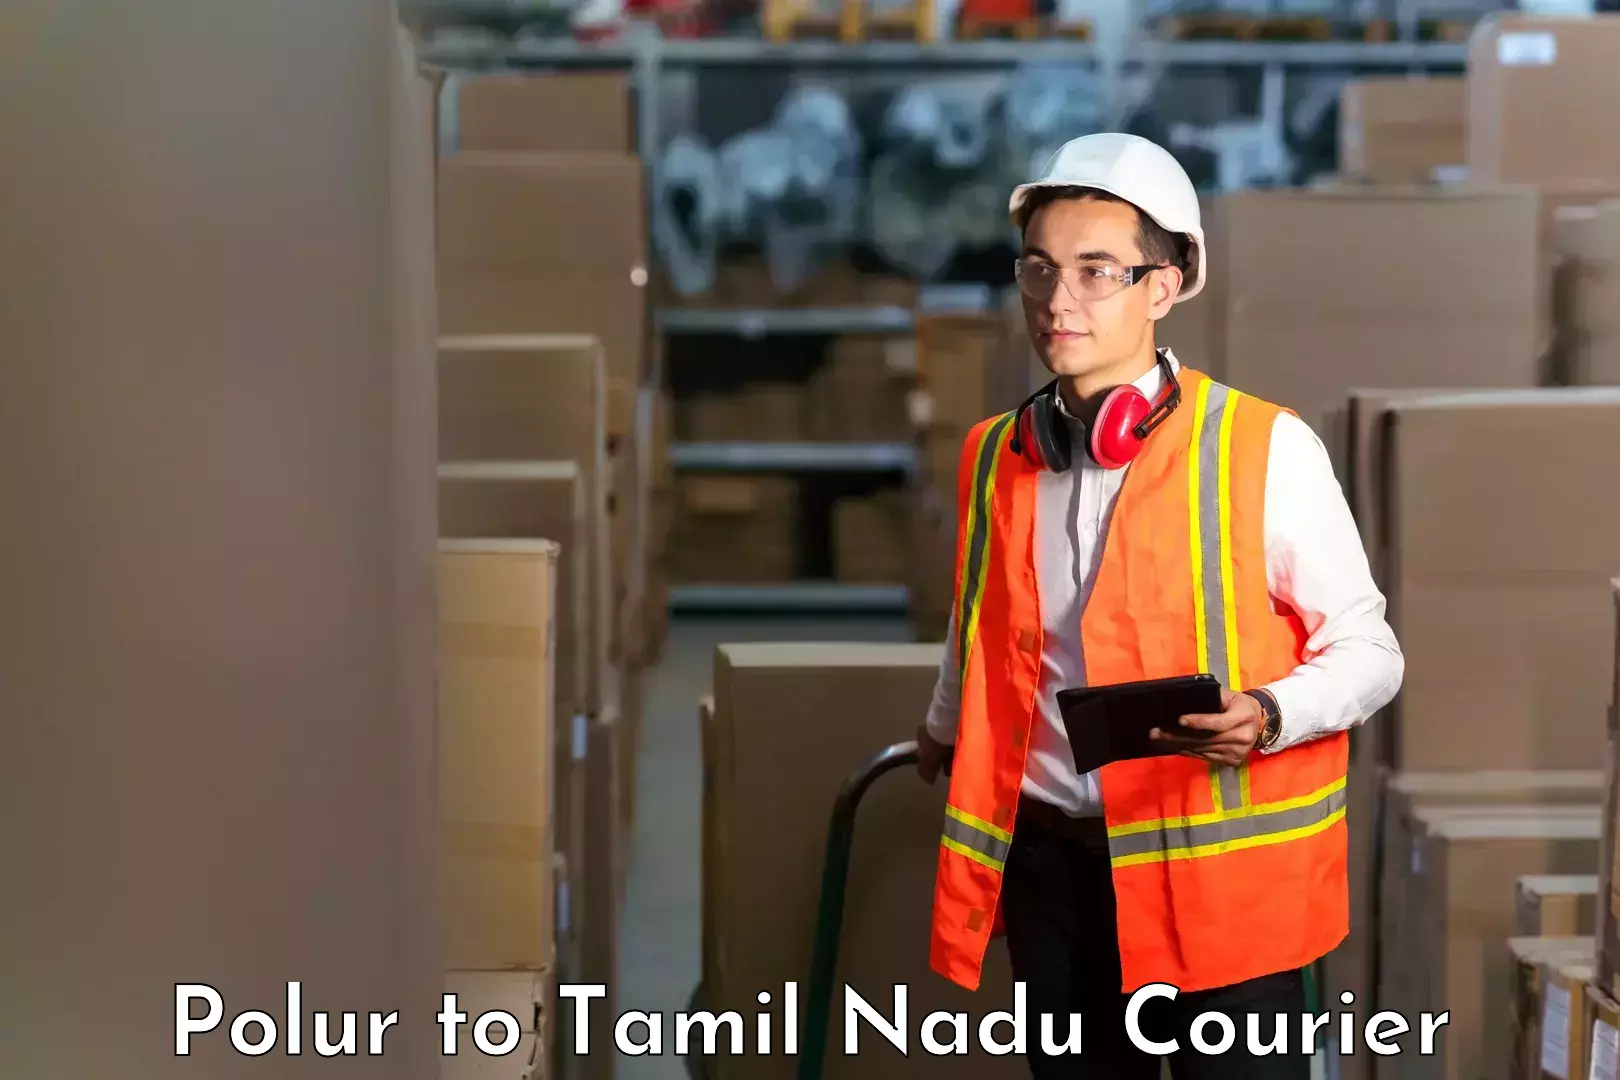 Next-generation courier services Polur to Thiruporur